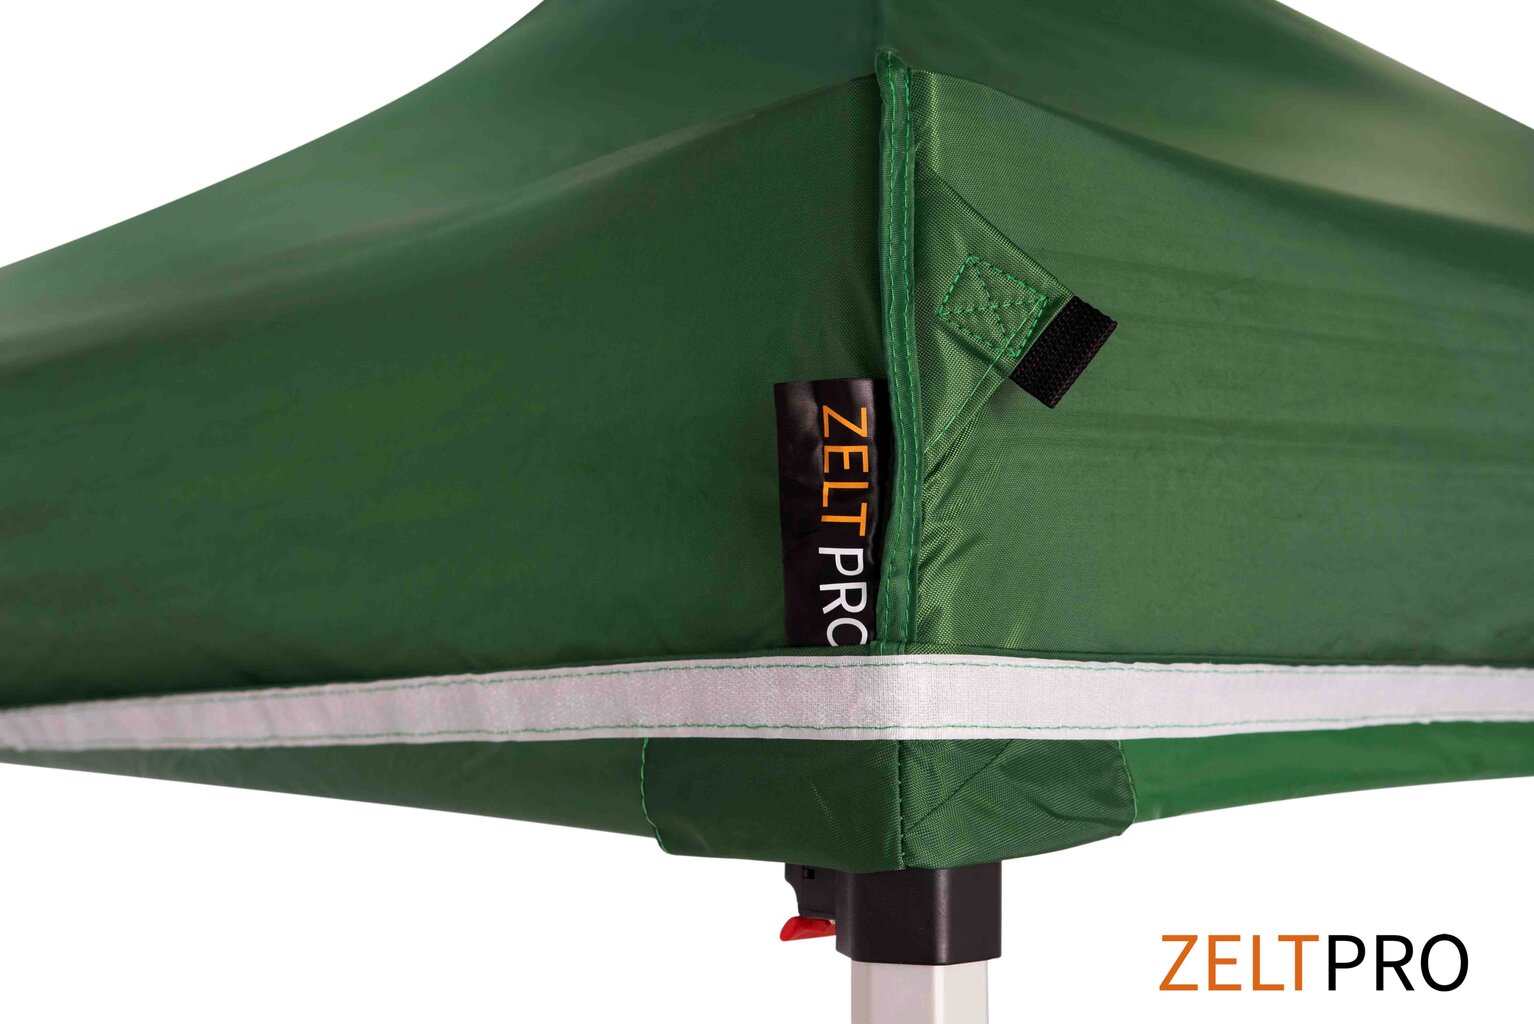 Prekybinė palapinė Zeltpro TITAN Žalia, 4x8 цена и информация | Palapinės | pigu.lt